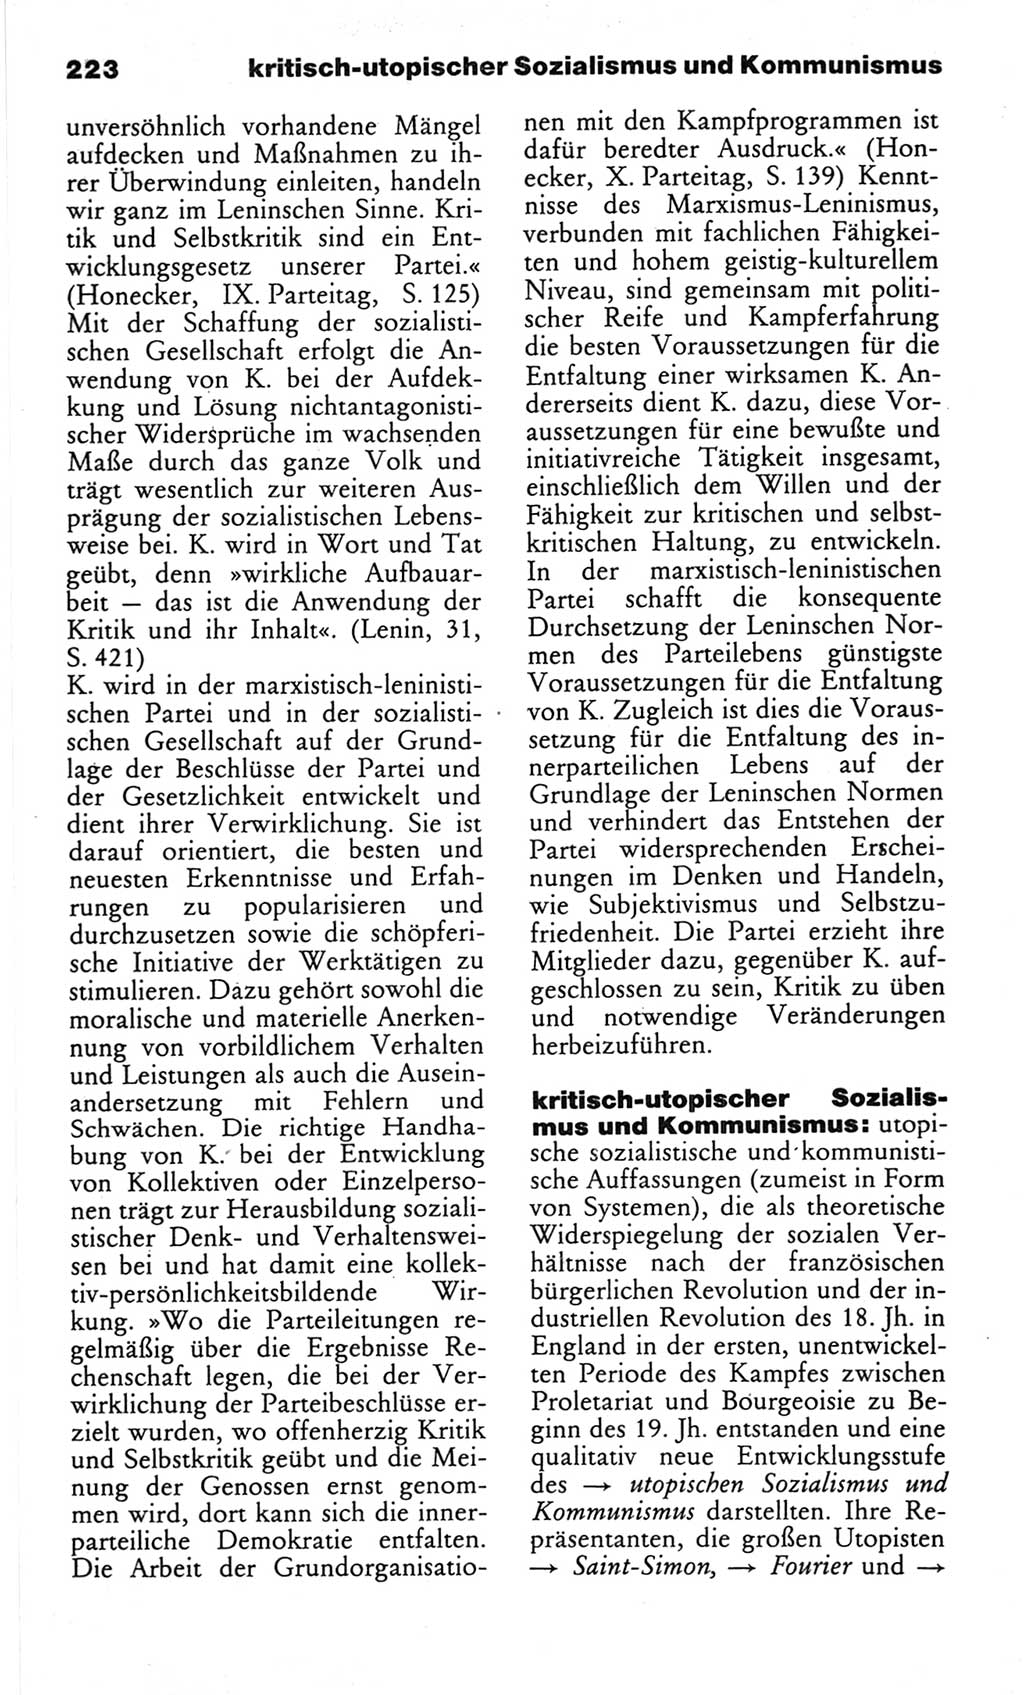 Wörterbuch des wissenschaftlichen Kommunismus [Deutsche Demokratische Republik (DDR)] 1982, Seite 223 (Wb. wiss. Komm. DDR 1982, S. 223)